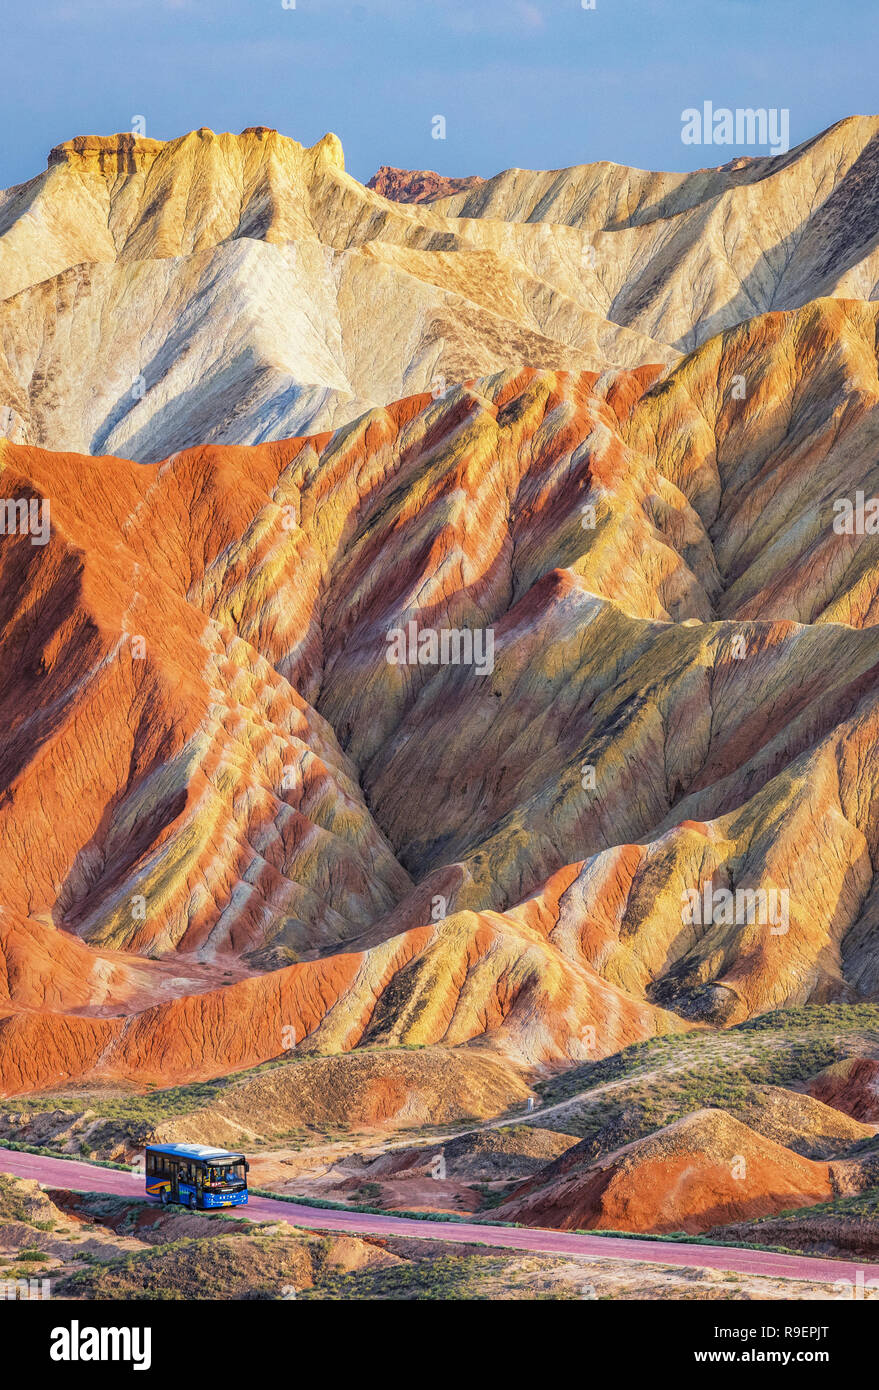 Colorido paisaje Danxia capturados en Zhangye Geoparque Nacional. Los colores vibrantes son causados por los minerales presentes en la roca arenisca. Foto de stock